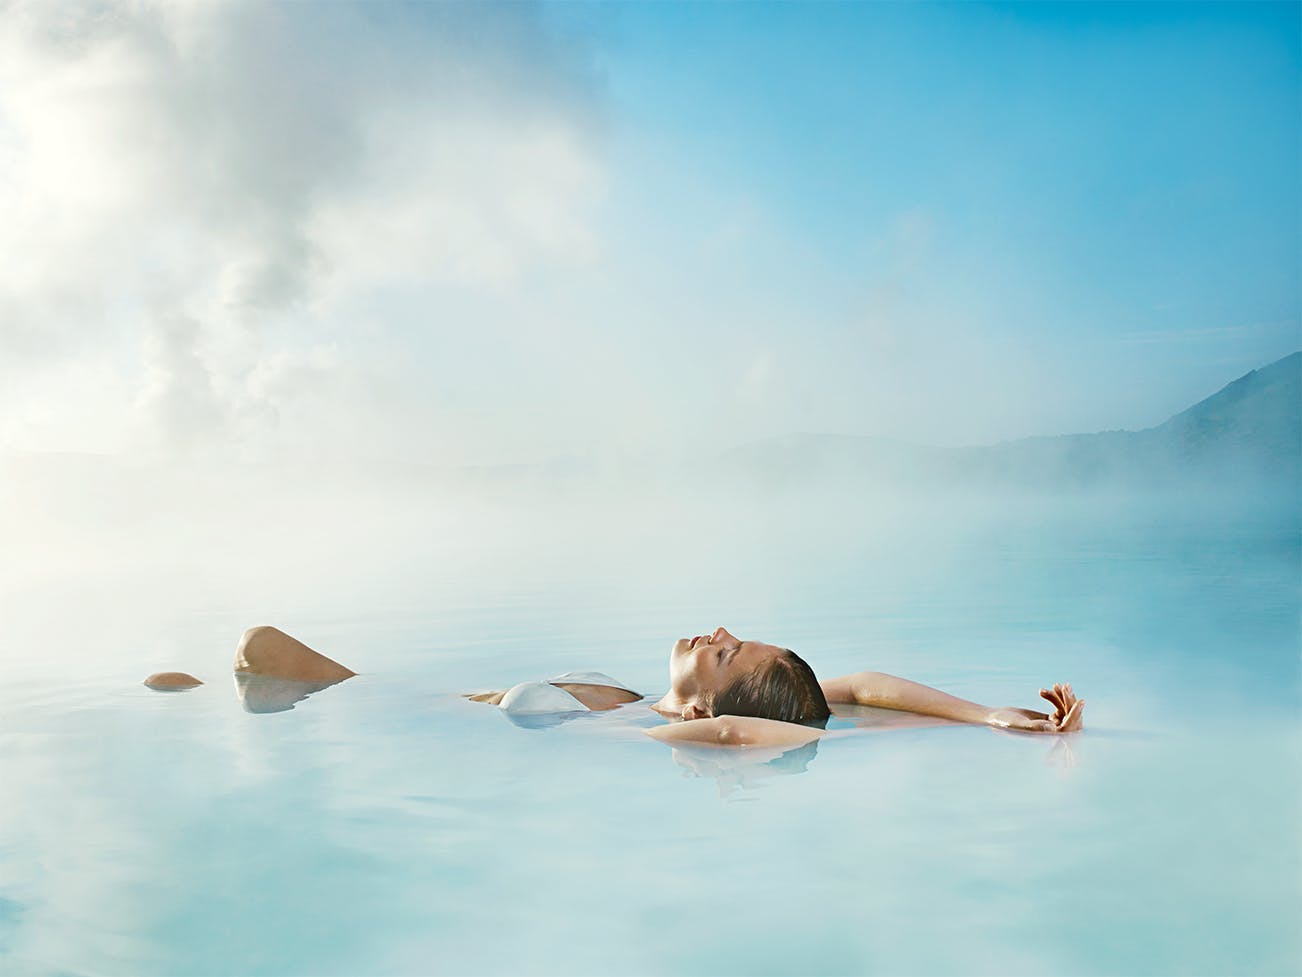 Einer der besten Einstiege in deine Islandreise ist ein Bad im magischen Wasser des berühmten Wellnessbads Blaue Lagune auf der Halbinsel Reykjanes.